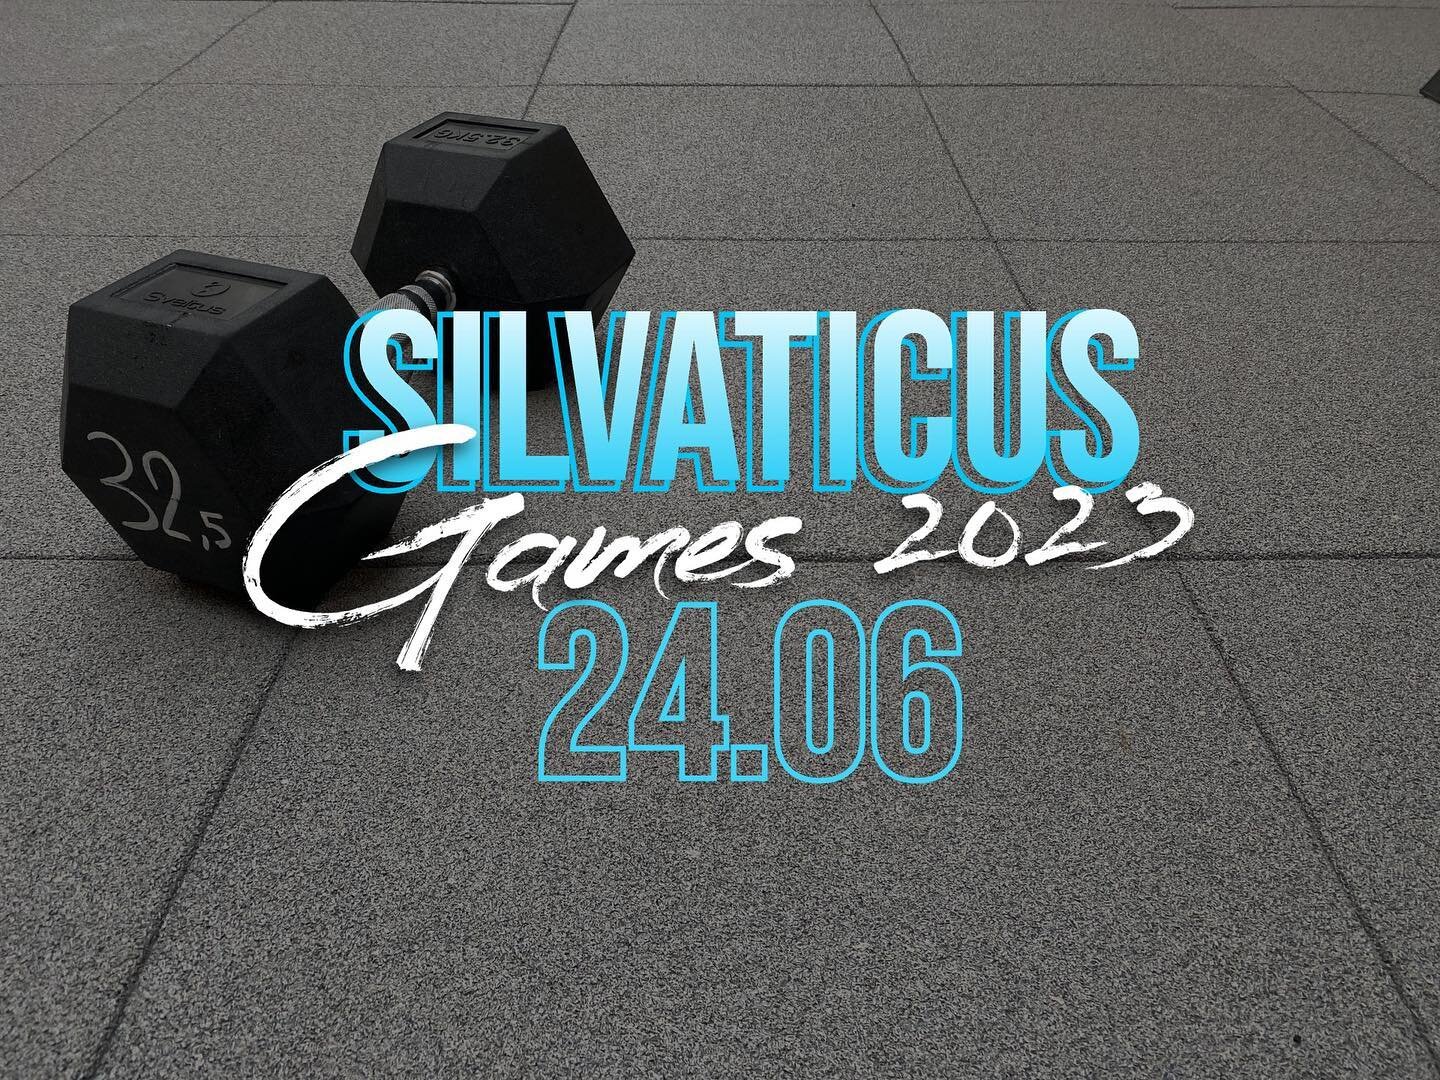 🔥 HERE WE GO AGAIN ! 🔥

Les Silvaticus Games sont de retour !

Cette ann&eacute;e on se donne rendez vous le samedi 24 juin pour une journ&eacute;e de comp&eacute;tition r&eacute;serv&eacute;e aux adh&eacute;rents de la salle:

Les infos :
- Comp&e